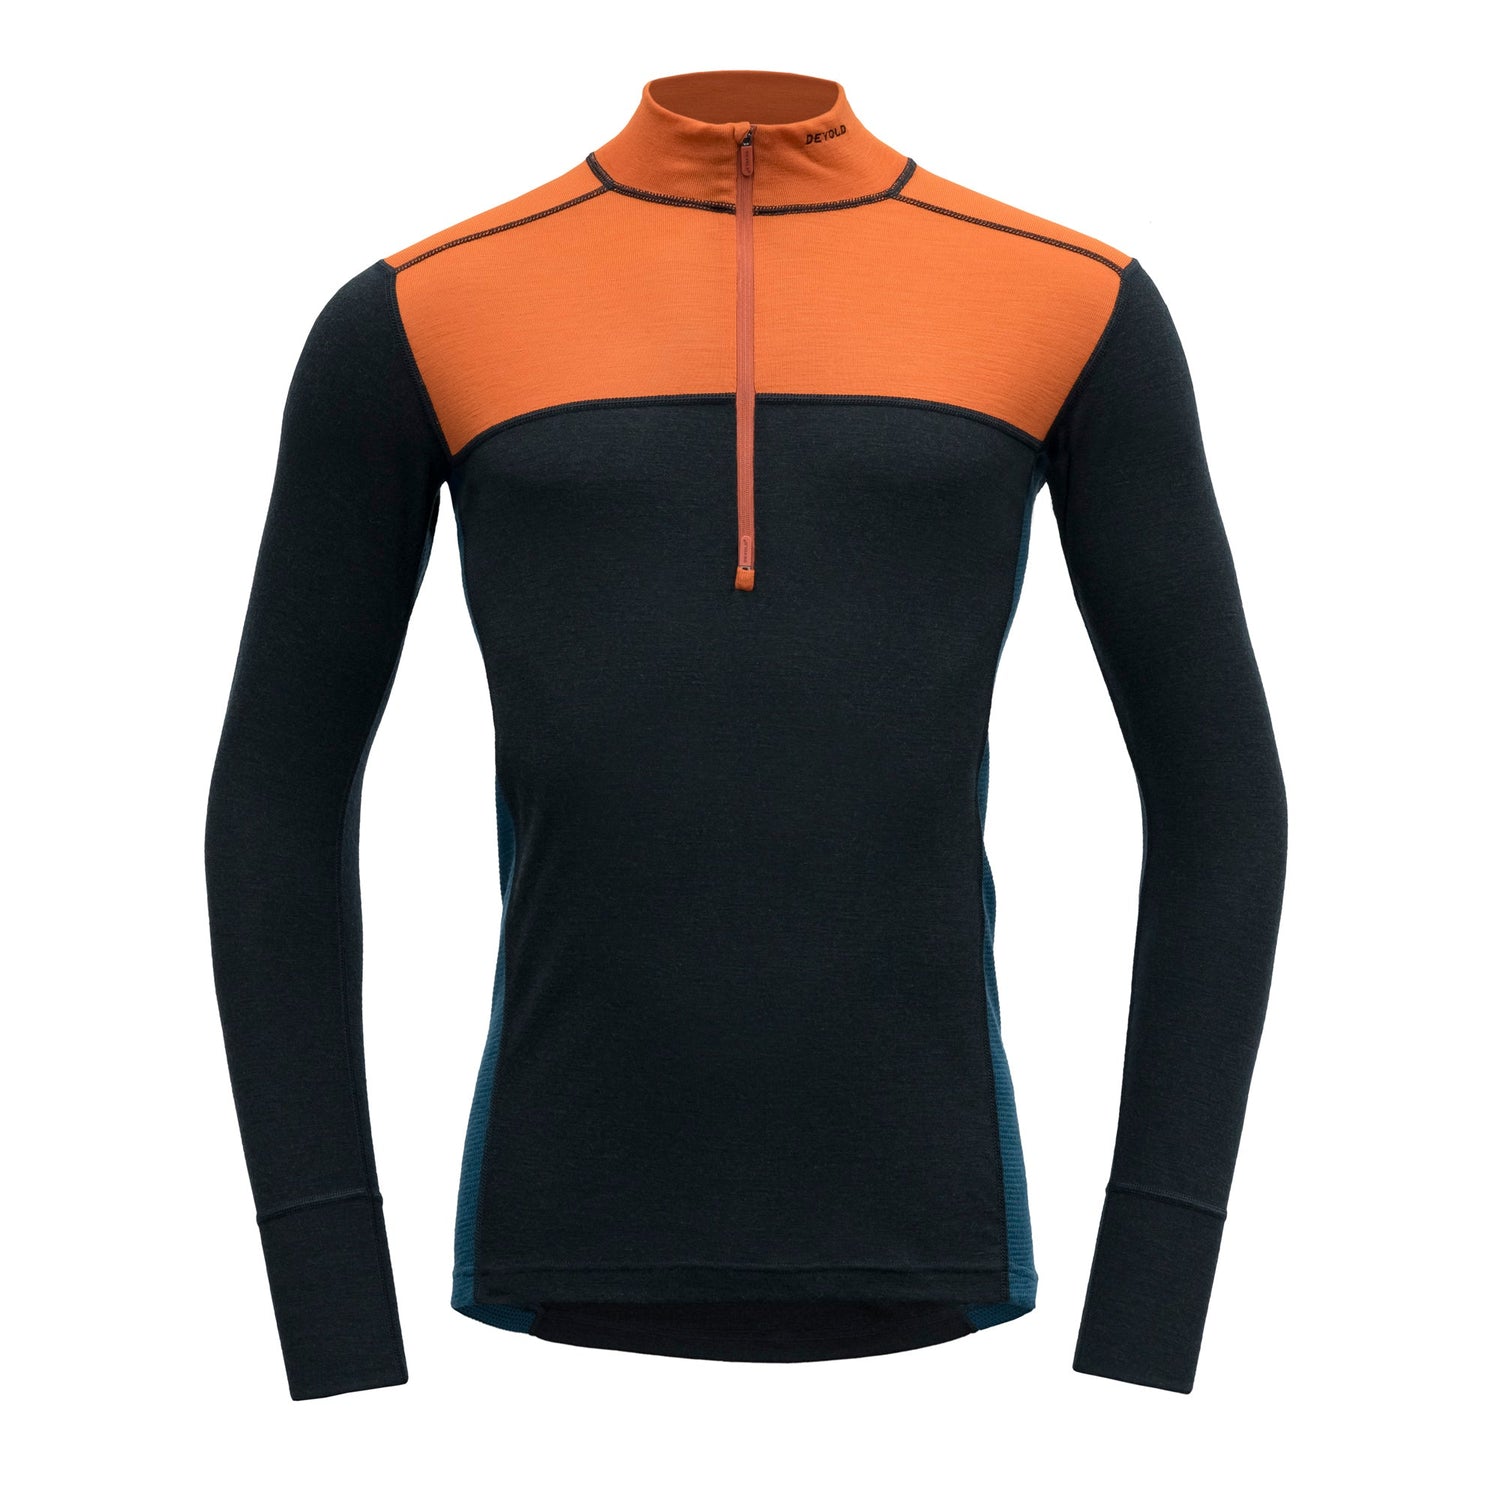 Devold - M's Lauparen Zip Neck - 100% Merino Wool - Weekendbee - sustainable sportswear